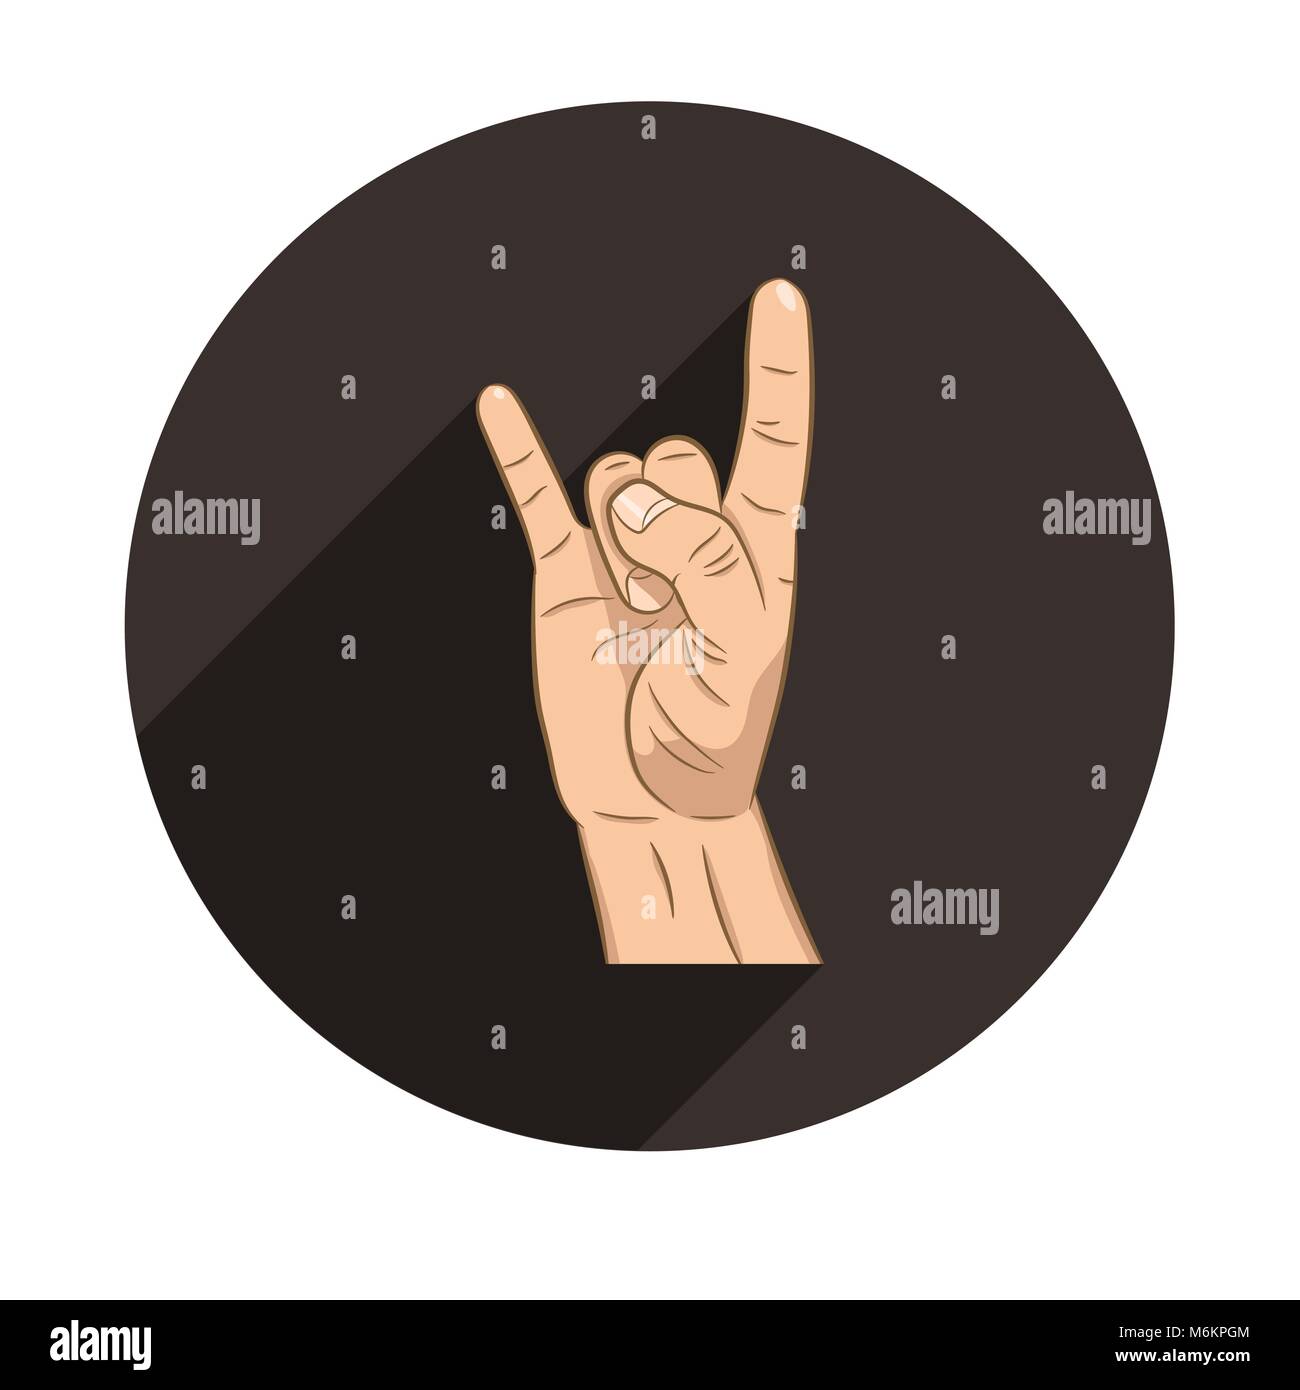 Realistische hand mit Rock n Roll sign Symbol mit langen Schatten. Rock Band. Kultur. Flache Bauform für soziale Netzwerke, Websites, Apps. Stock Vektor